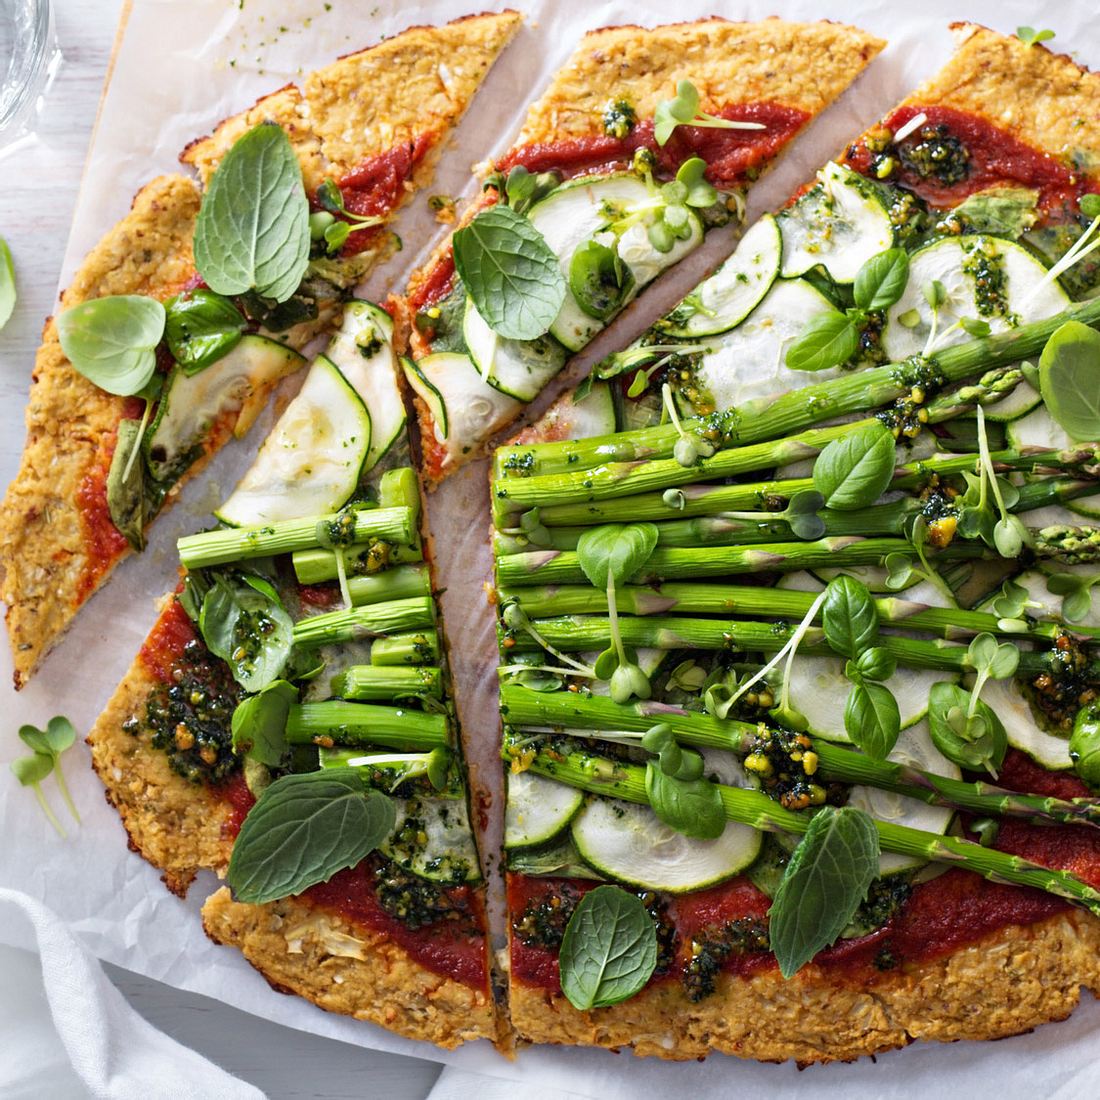 Bei einer gesunden Pizza kommt es vor allem auf den Teig und auf den Belag an. Grünes Gemüse und ein bisschen weniger fettigen Käse können schon einen gewaltigen Unterschied machen!